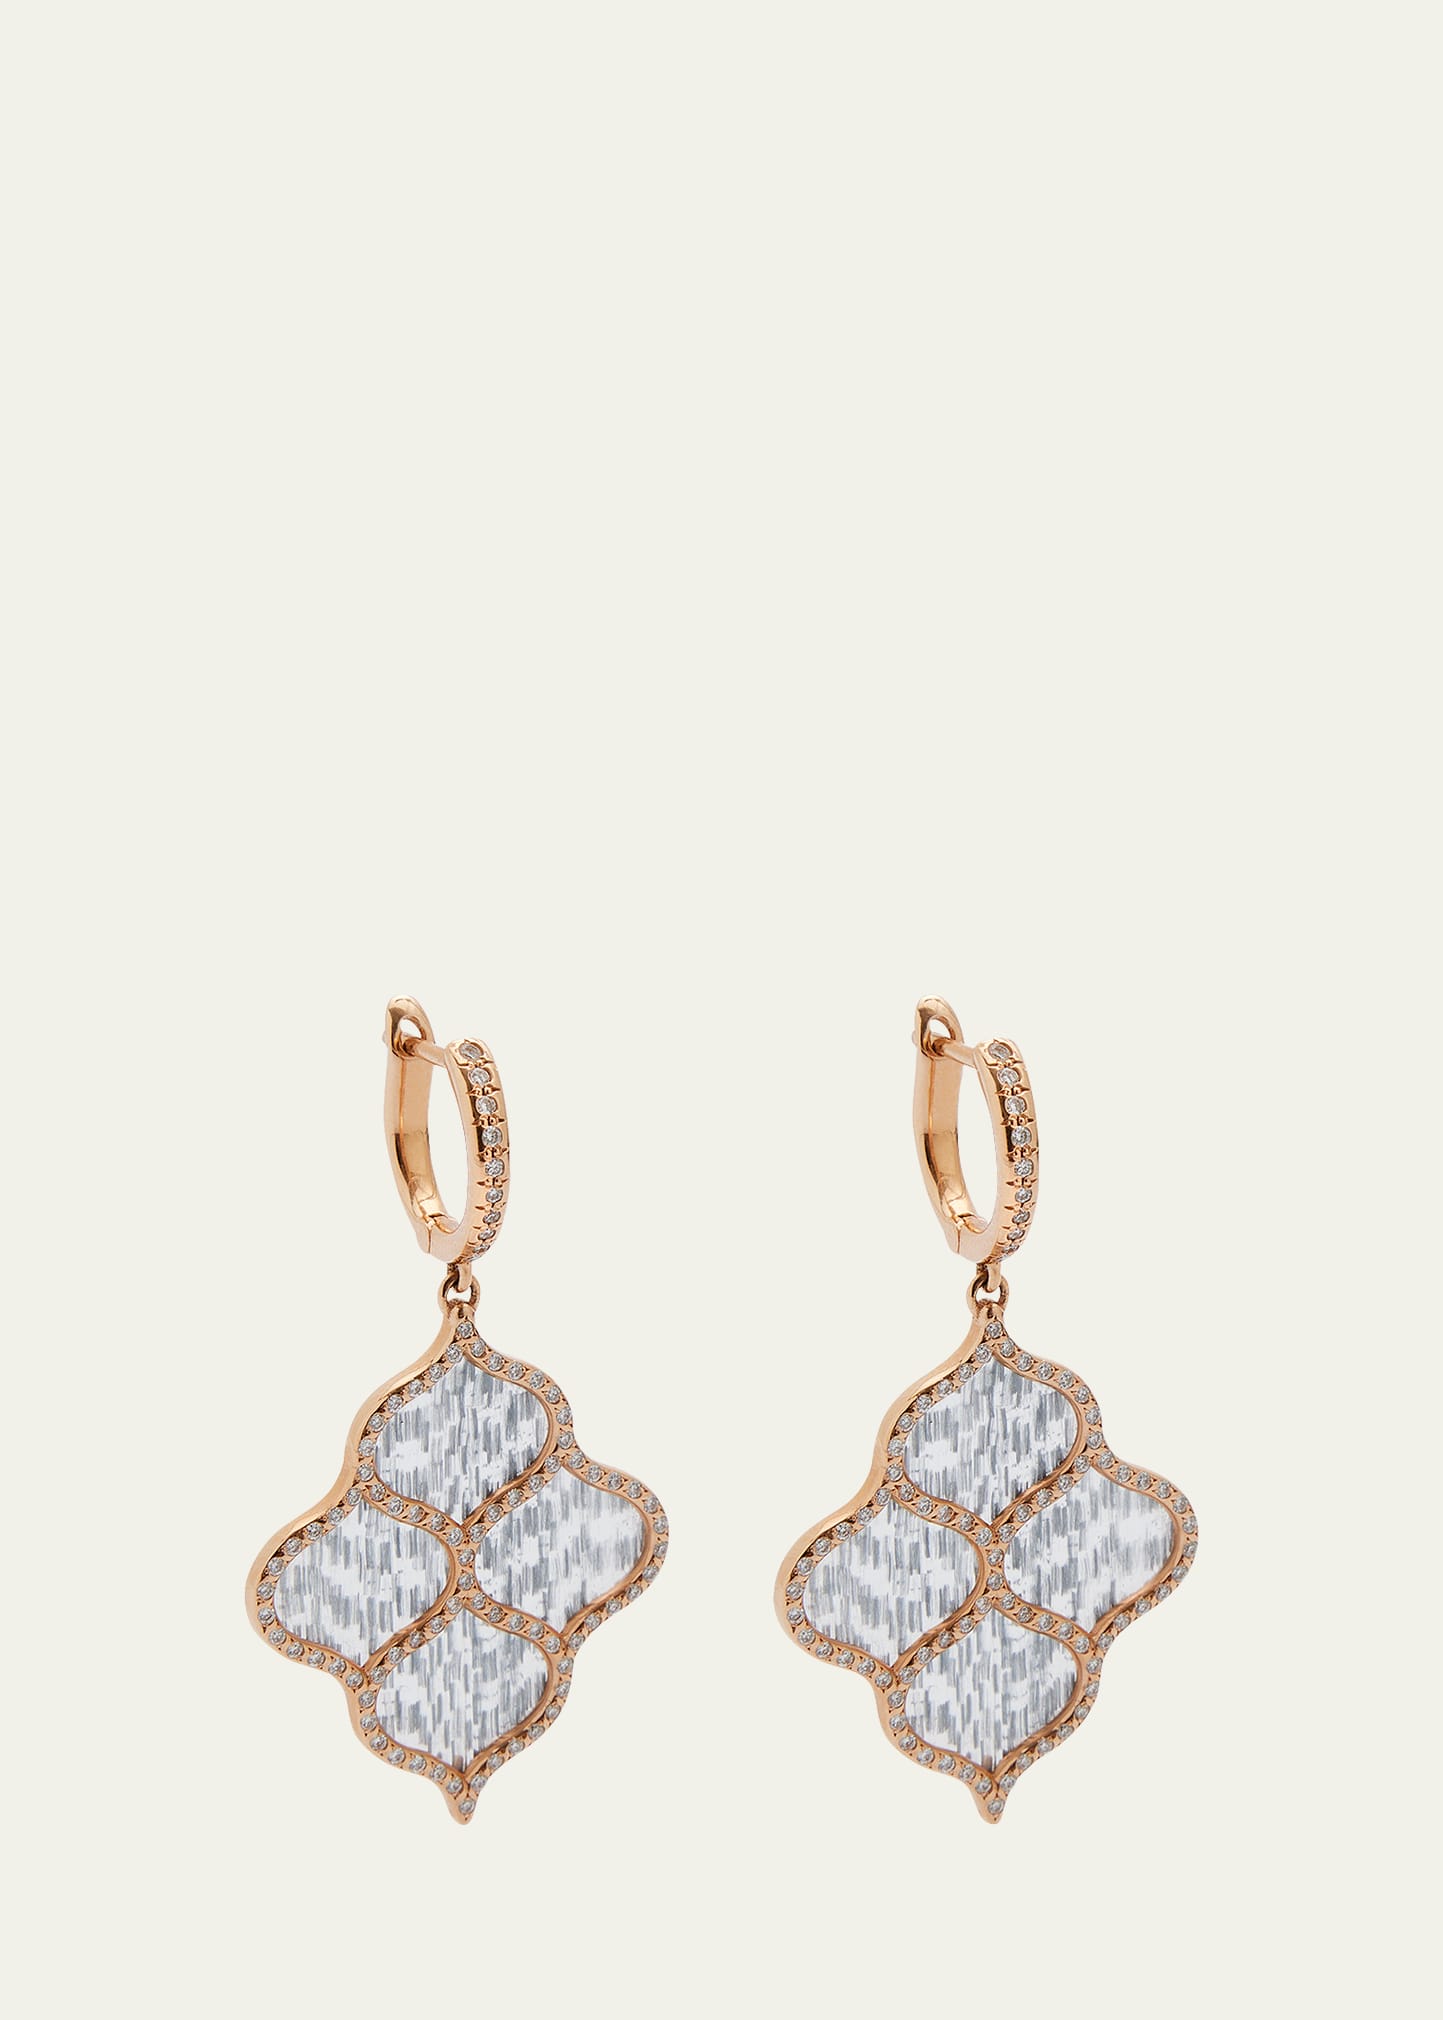 Boghossian Rose Gold Earrings with Diamonds